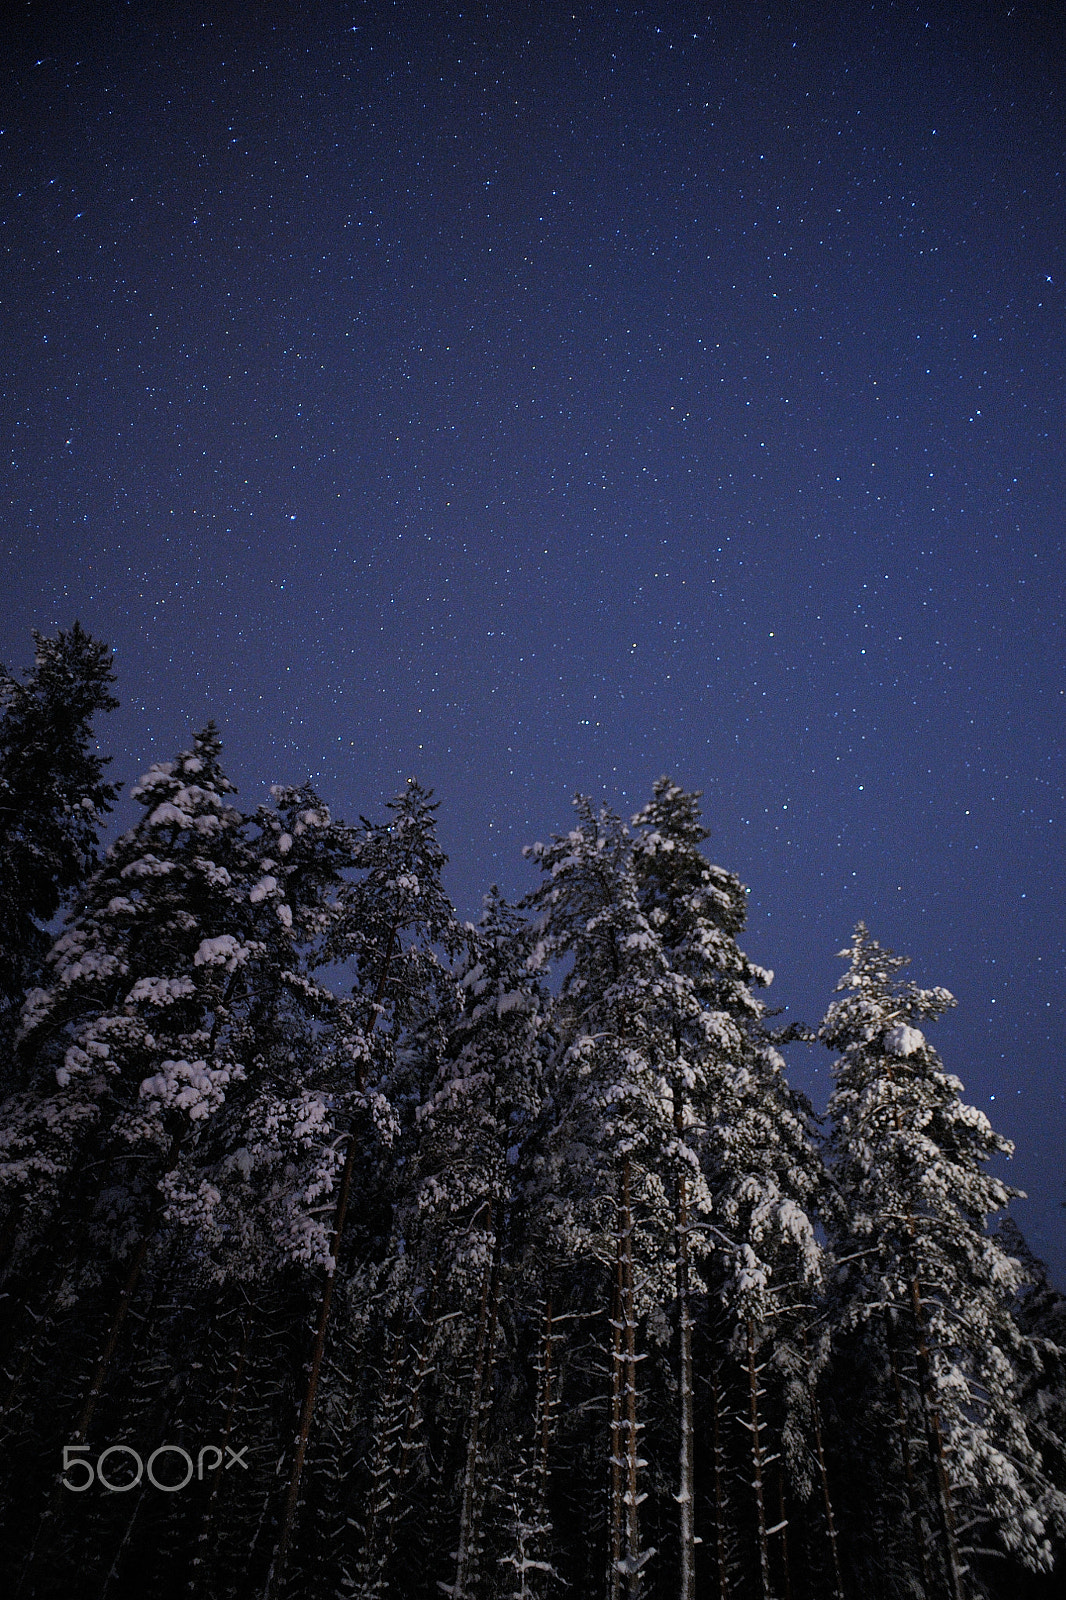 Nikon D700 + AF Nikkor 20mm f/2.8 sample photo. Winter forest photography